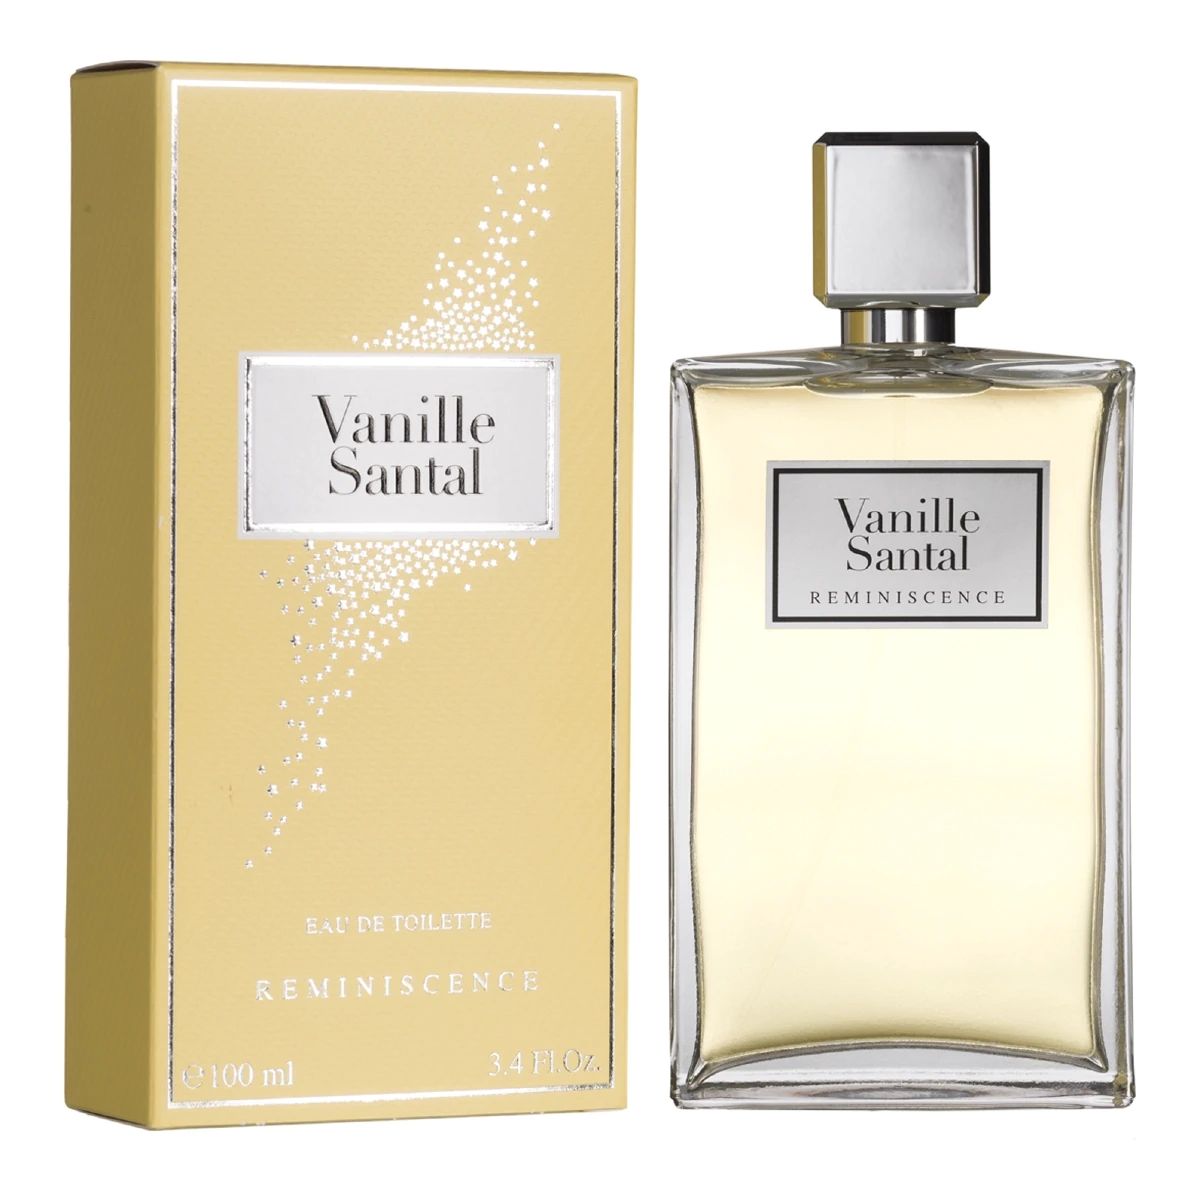 Vanille Santal Reminiscence parfum - un nouveau parfum ...